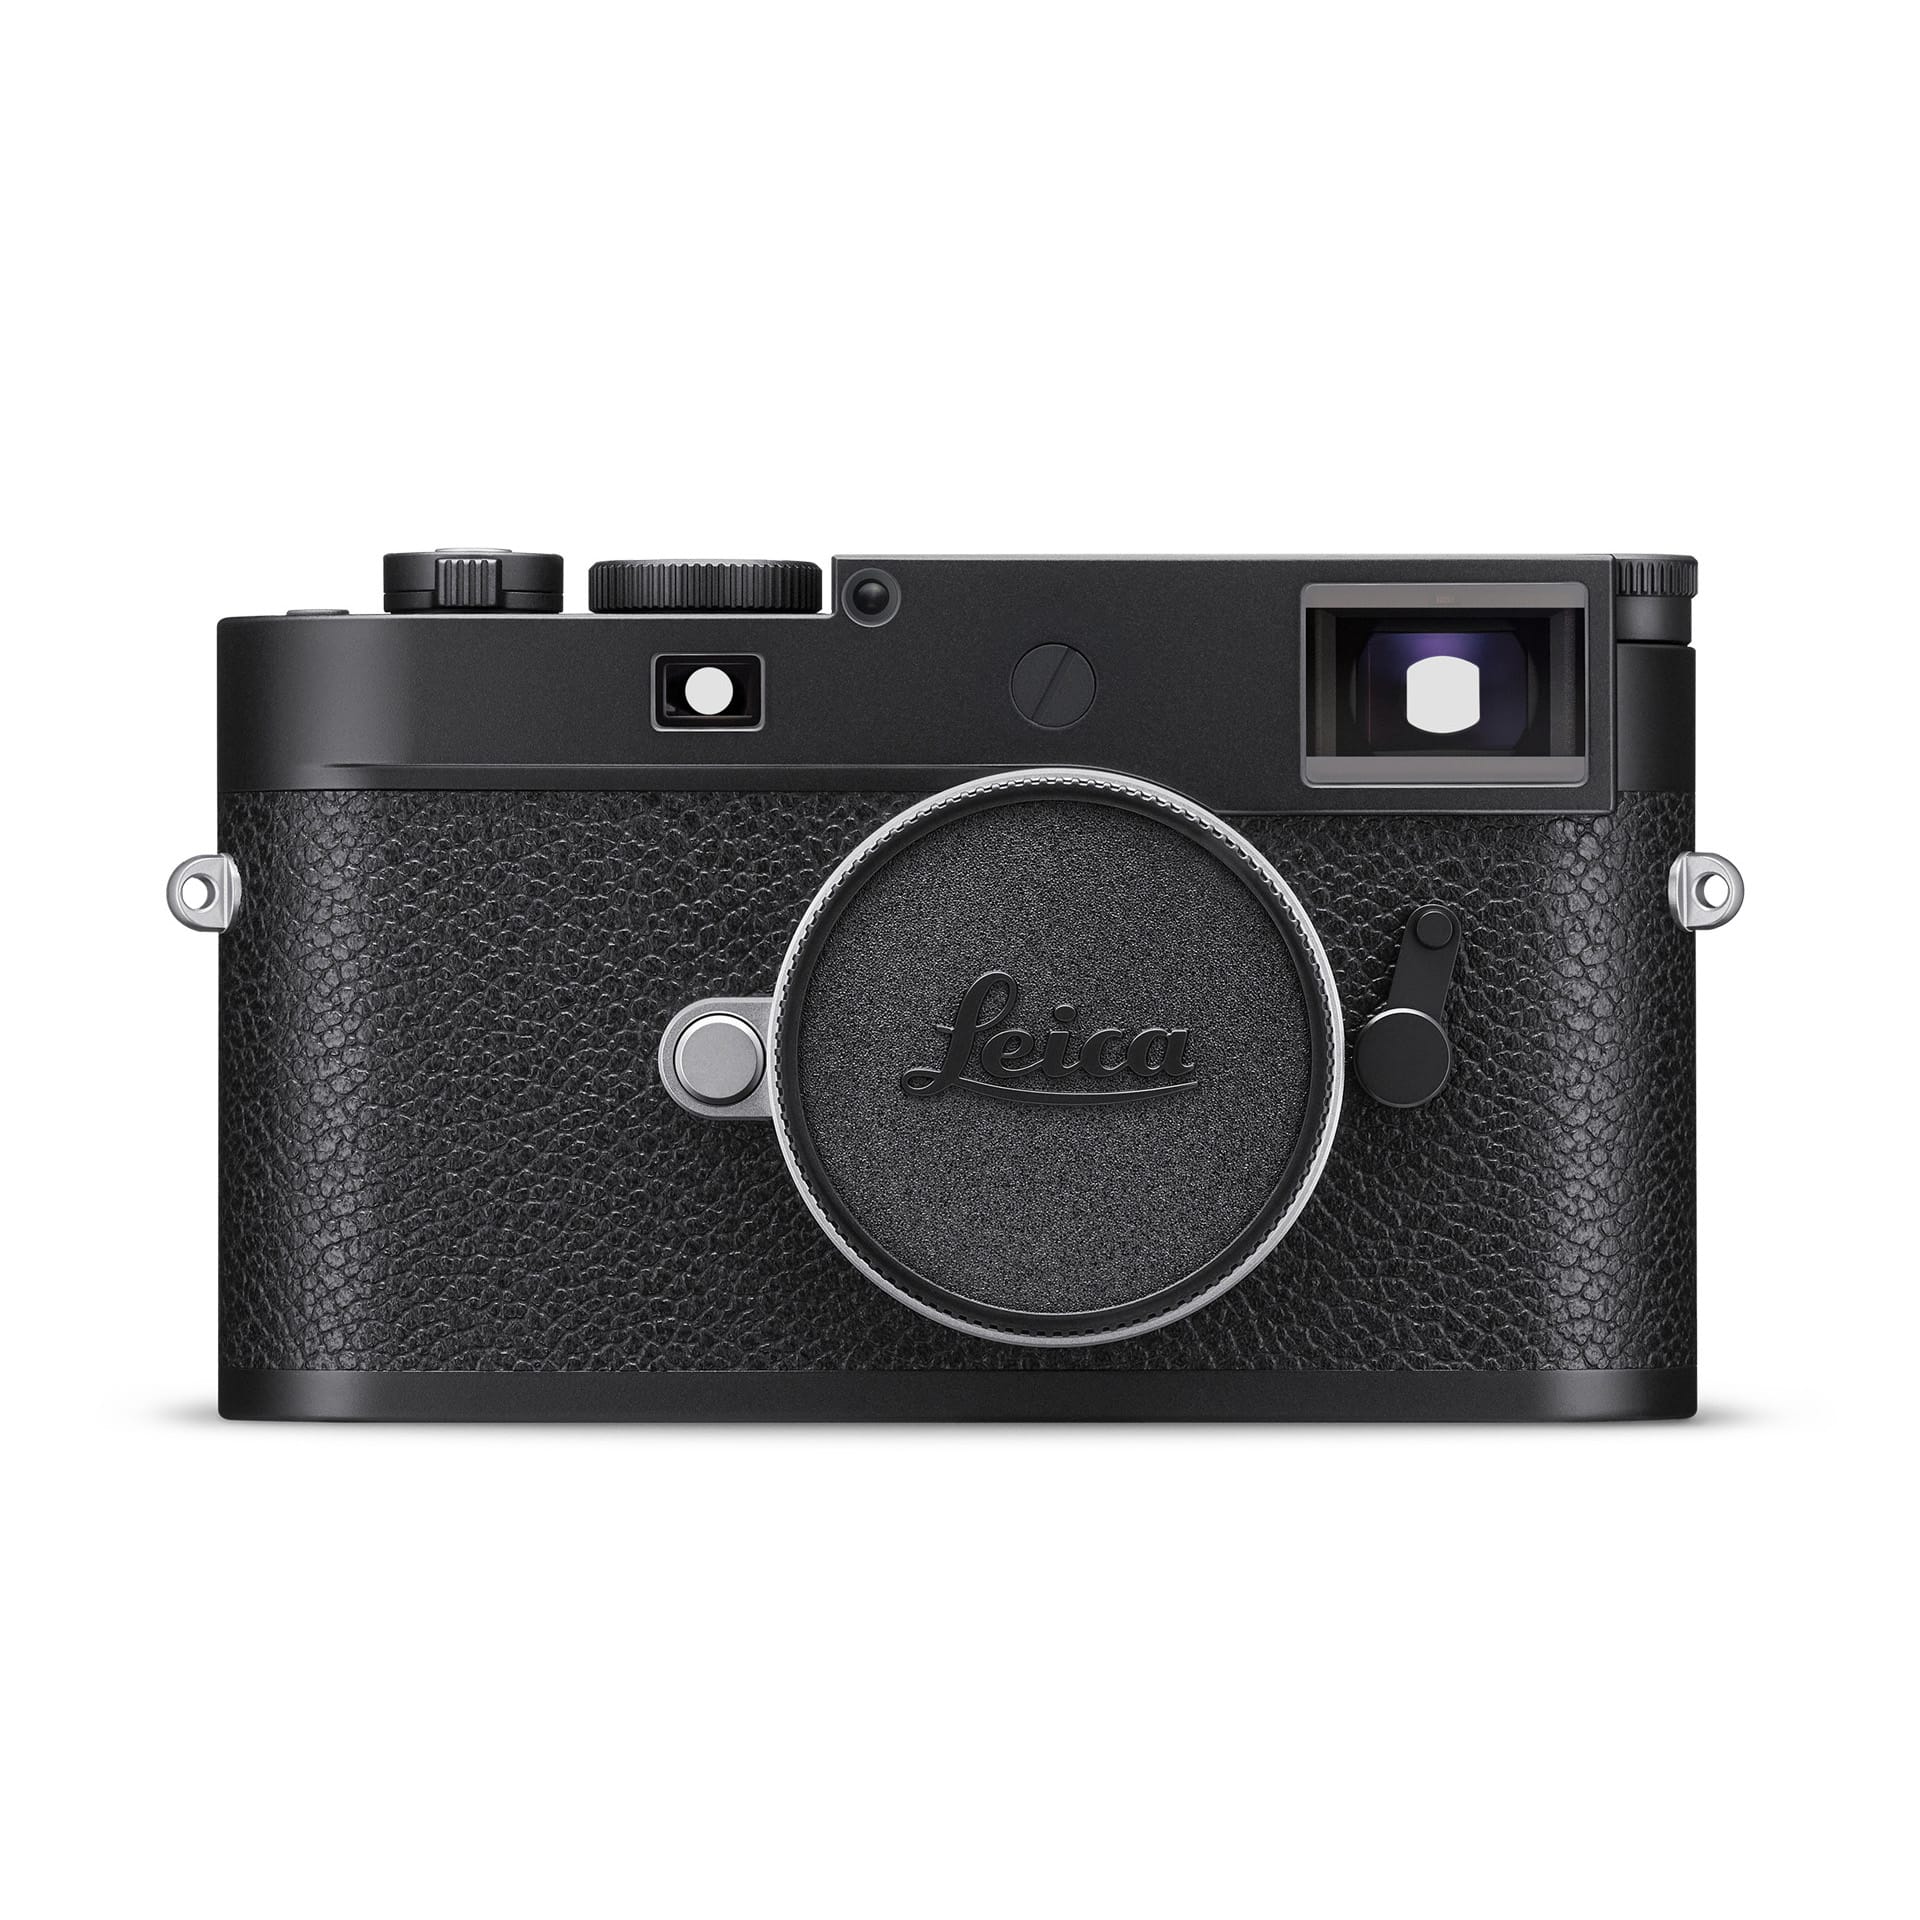 Leica(ライカ) M11 レンジファインダーデジタルカメラ モノクローム